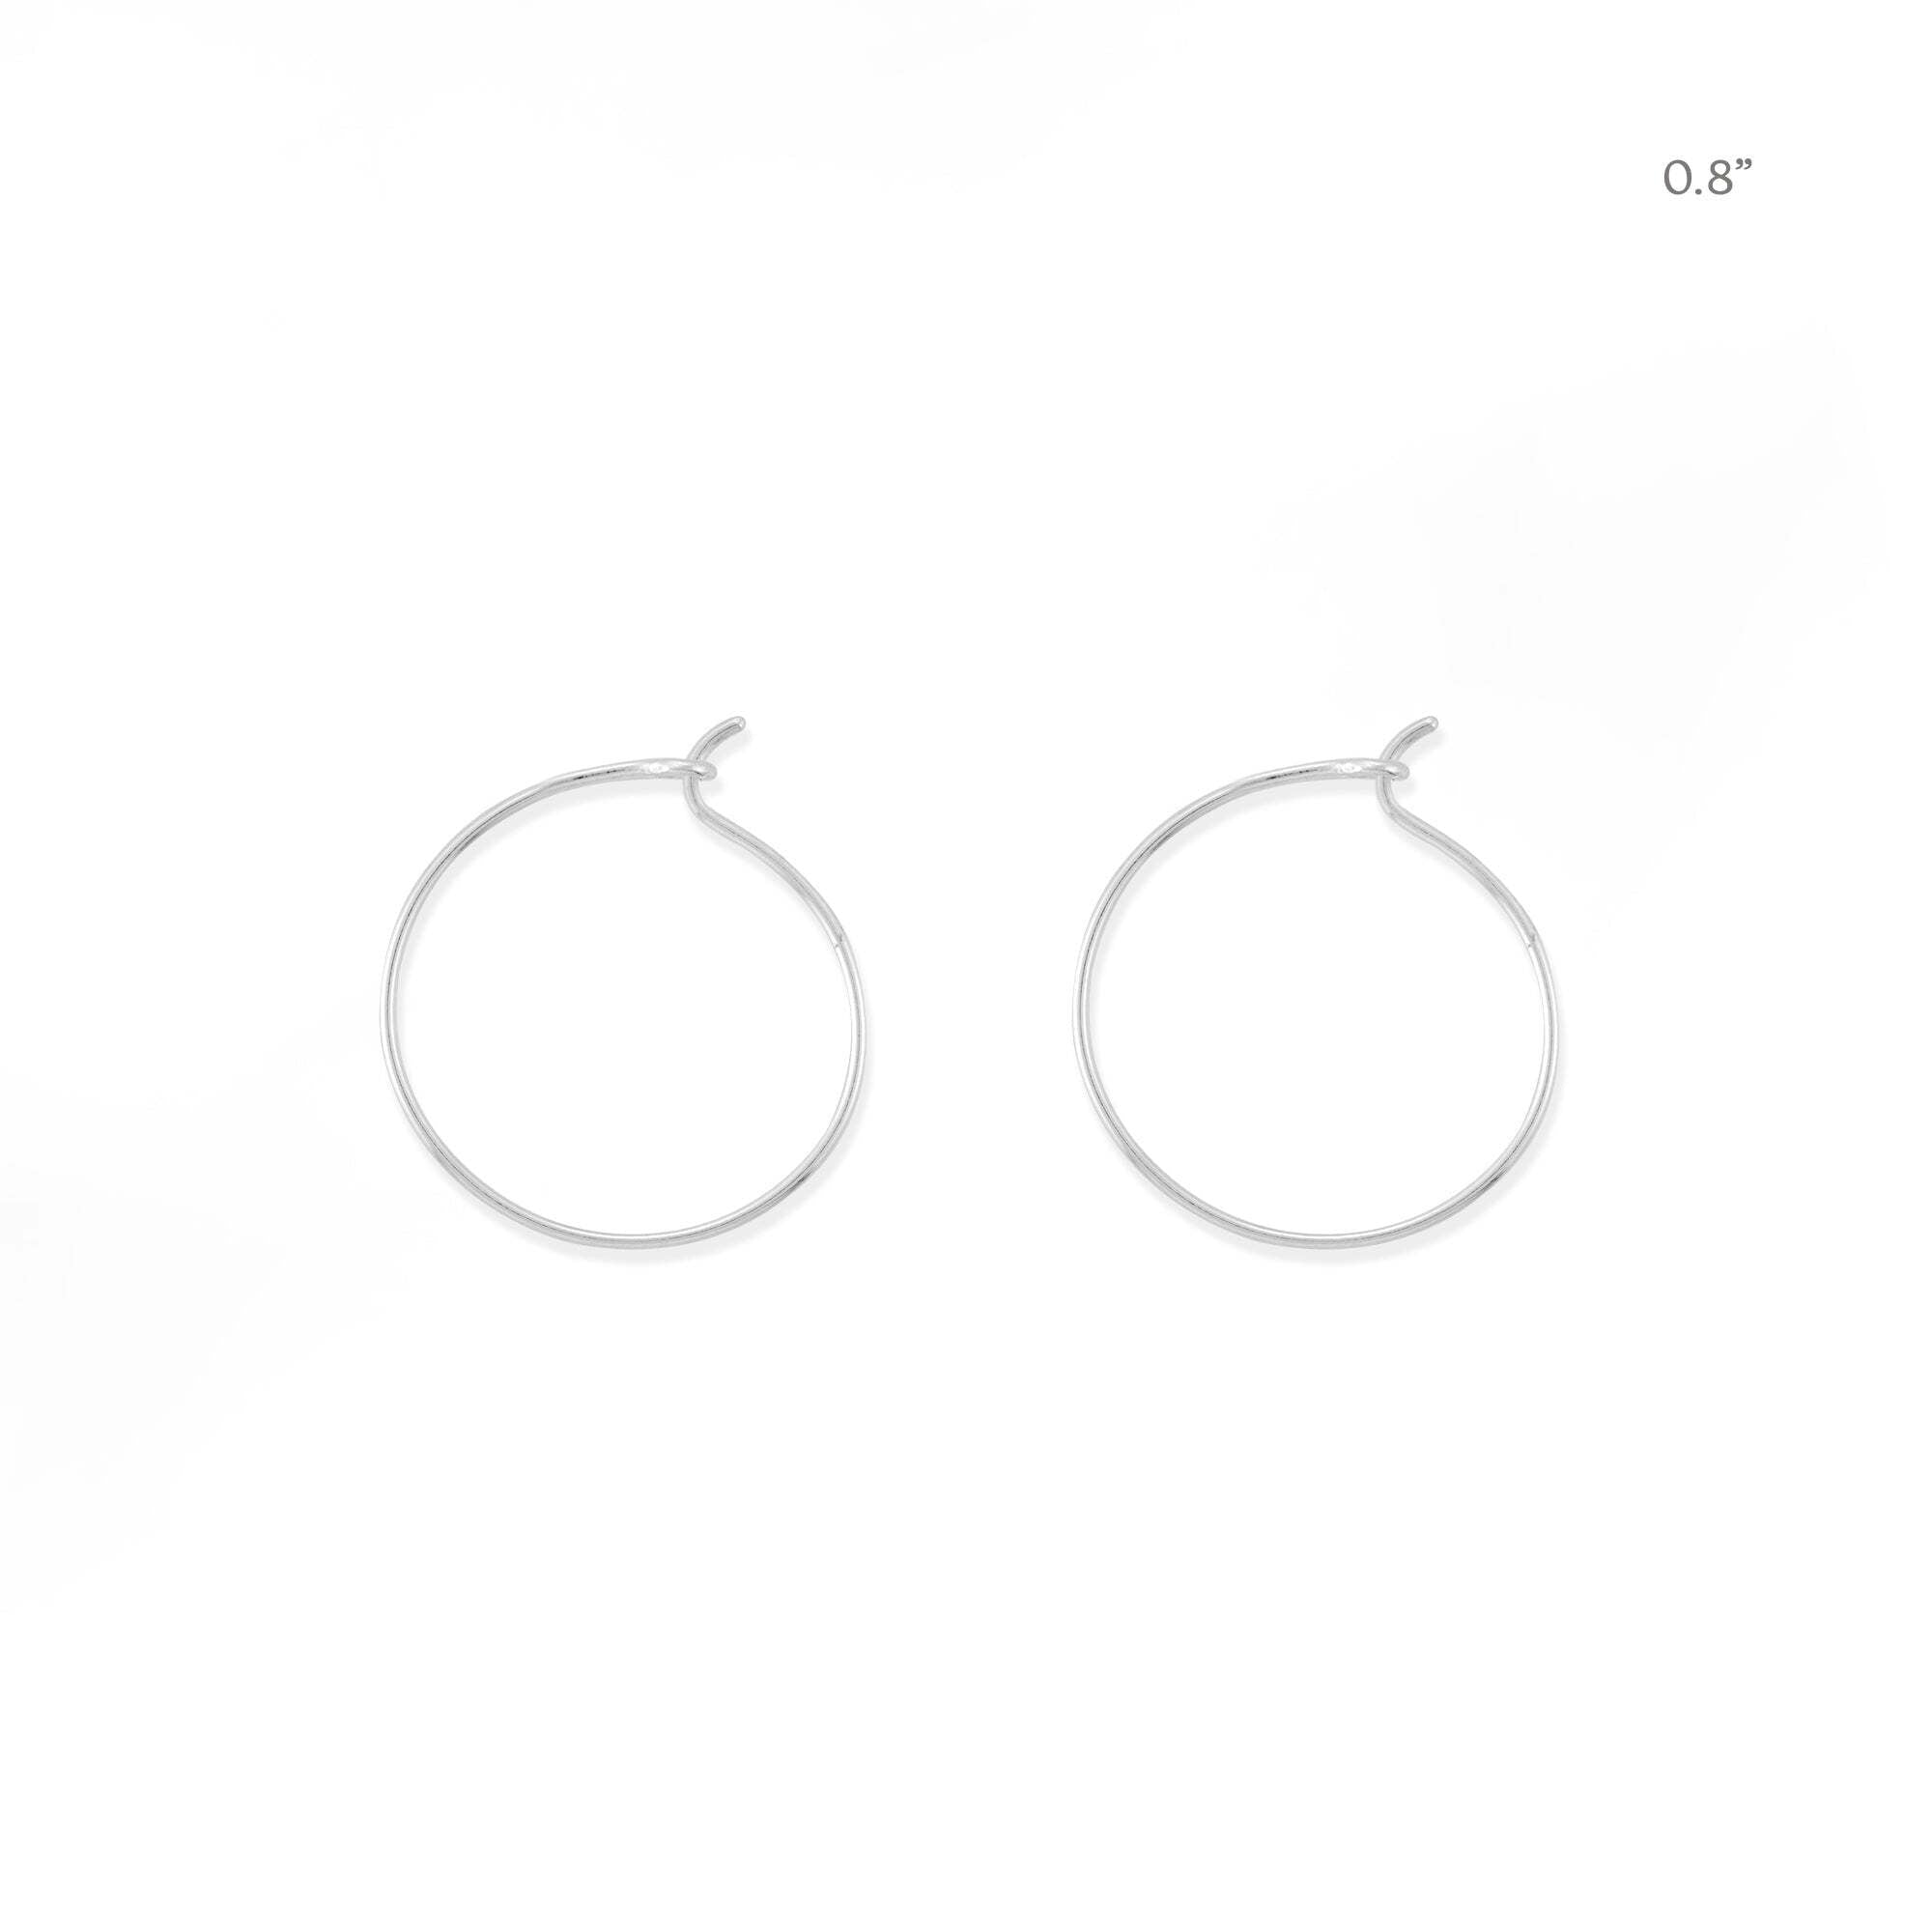 Boma Jewelry Earrings Sterling Silver / 0.8" Aiko Hoop Earrings